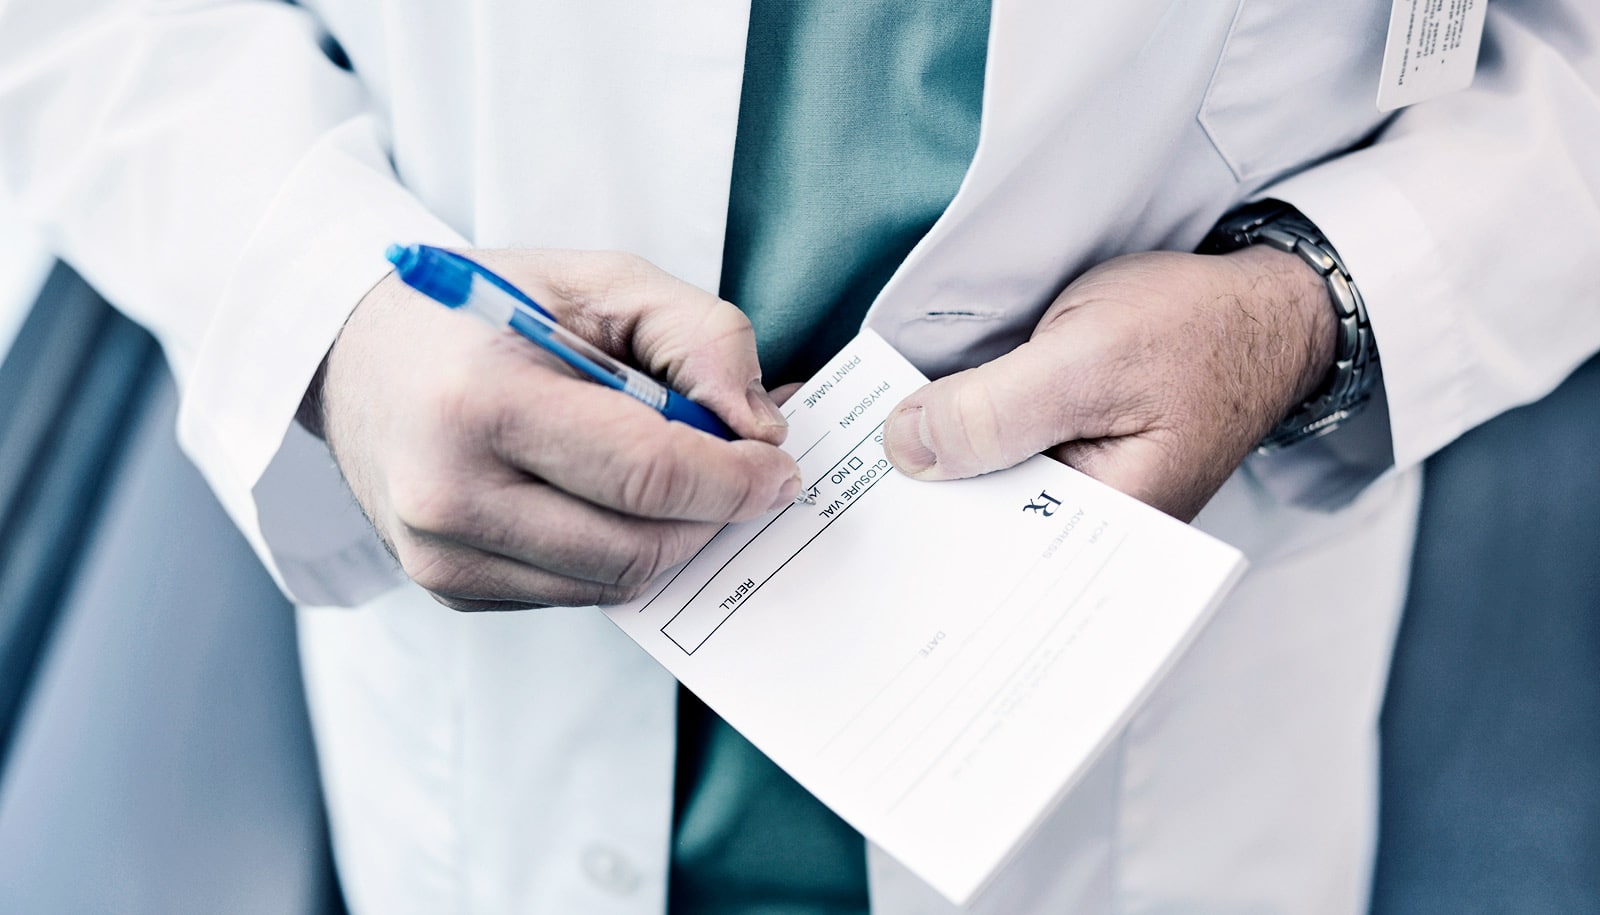 Handwritten prescriptions for opioids contain more errors - Futurity